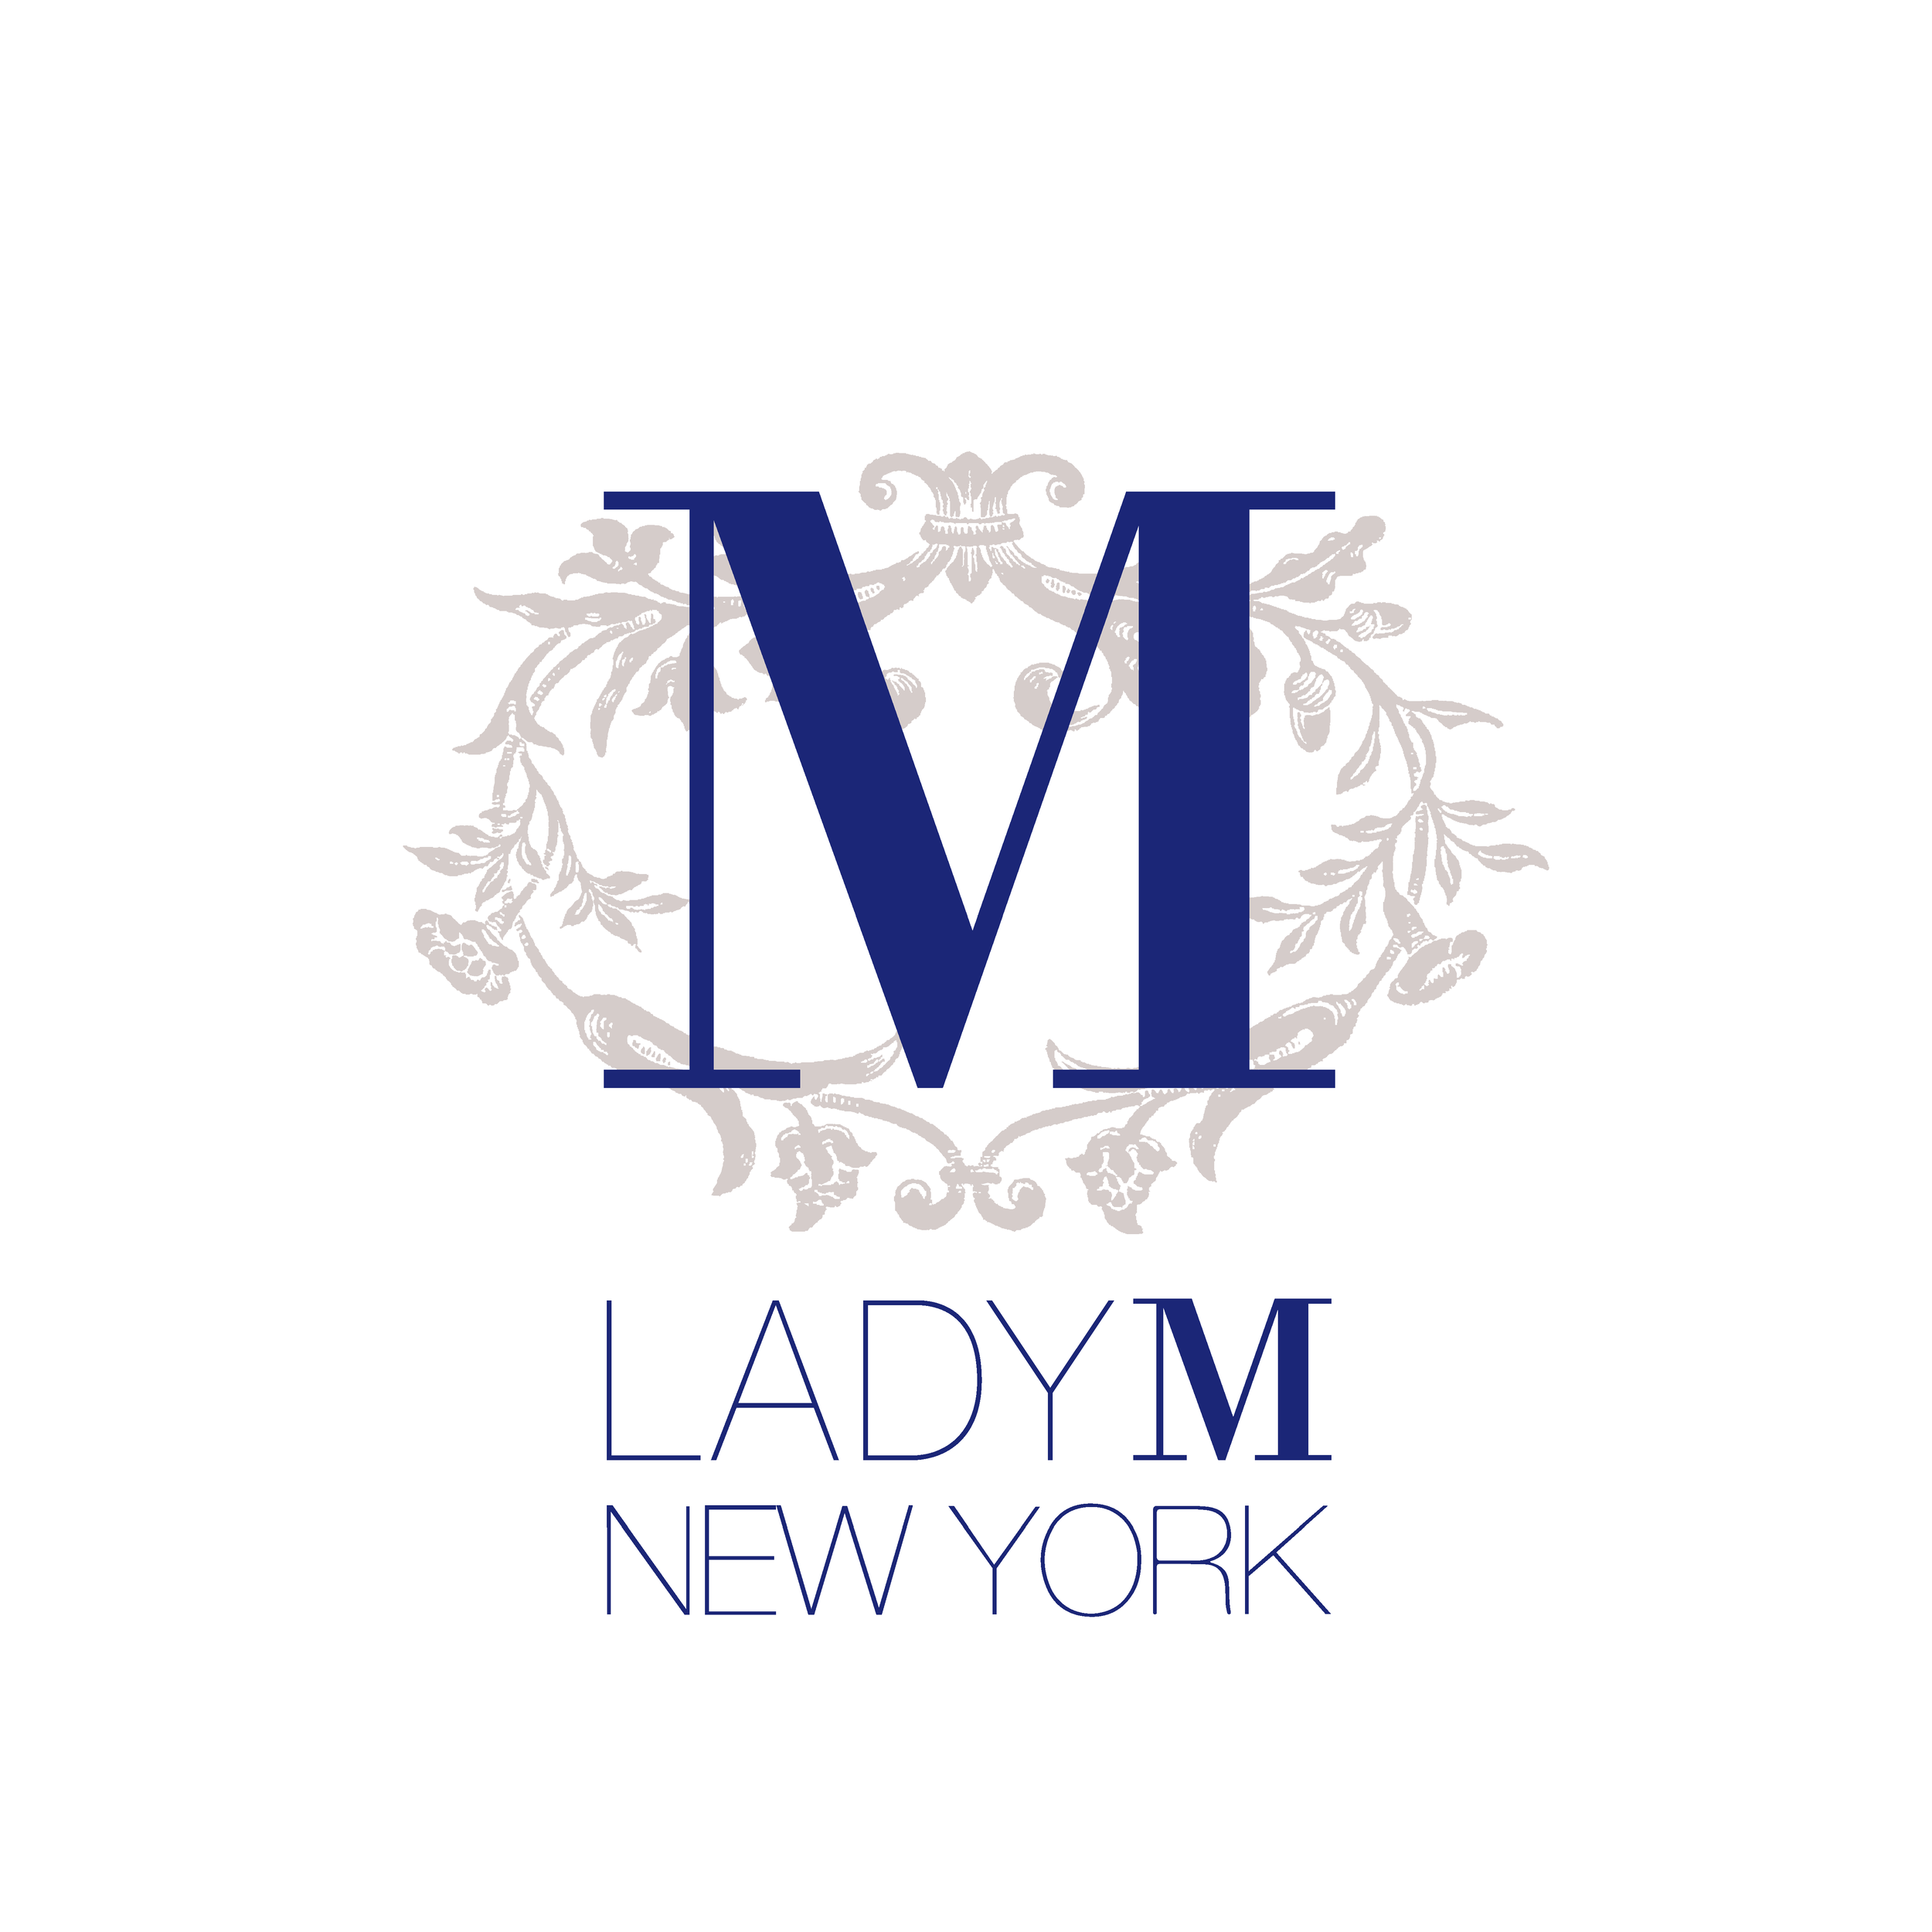          lady m(国金中心店)